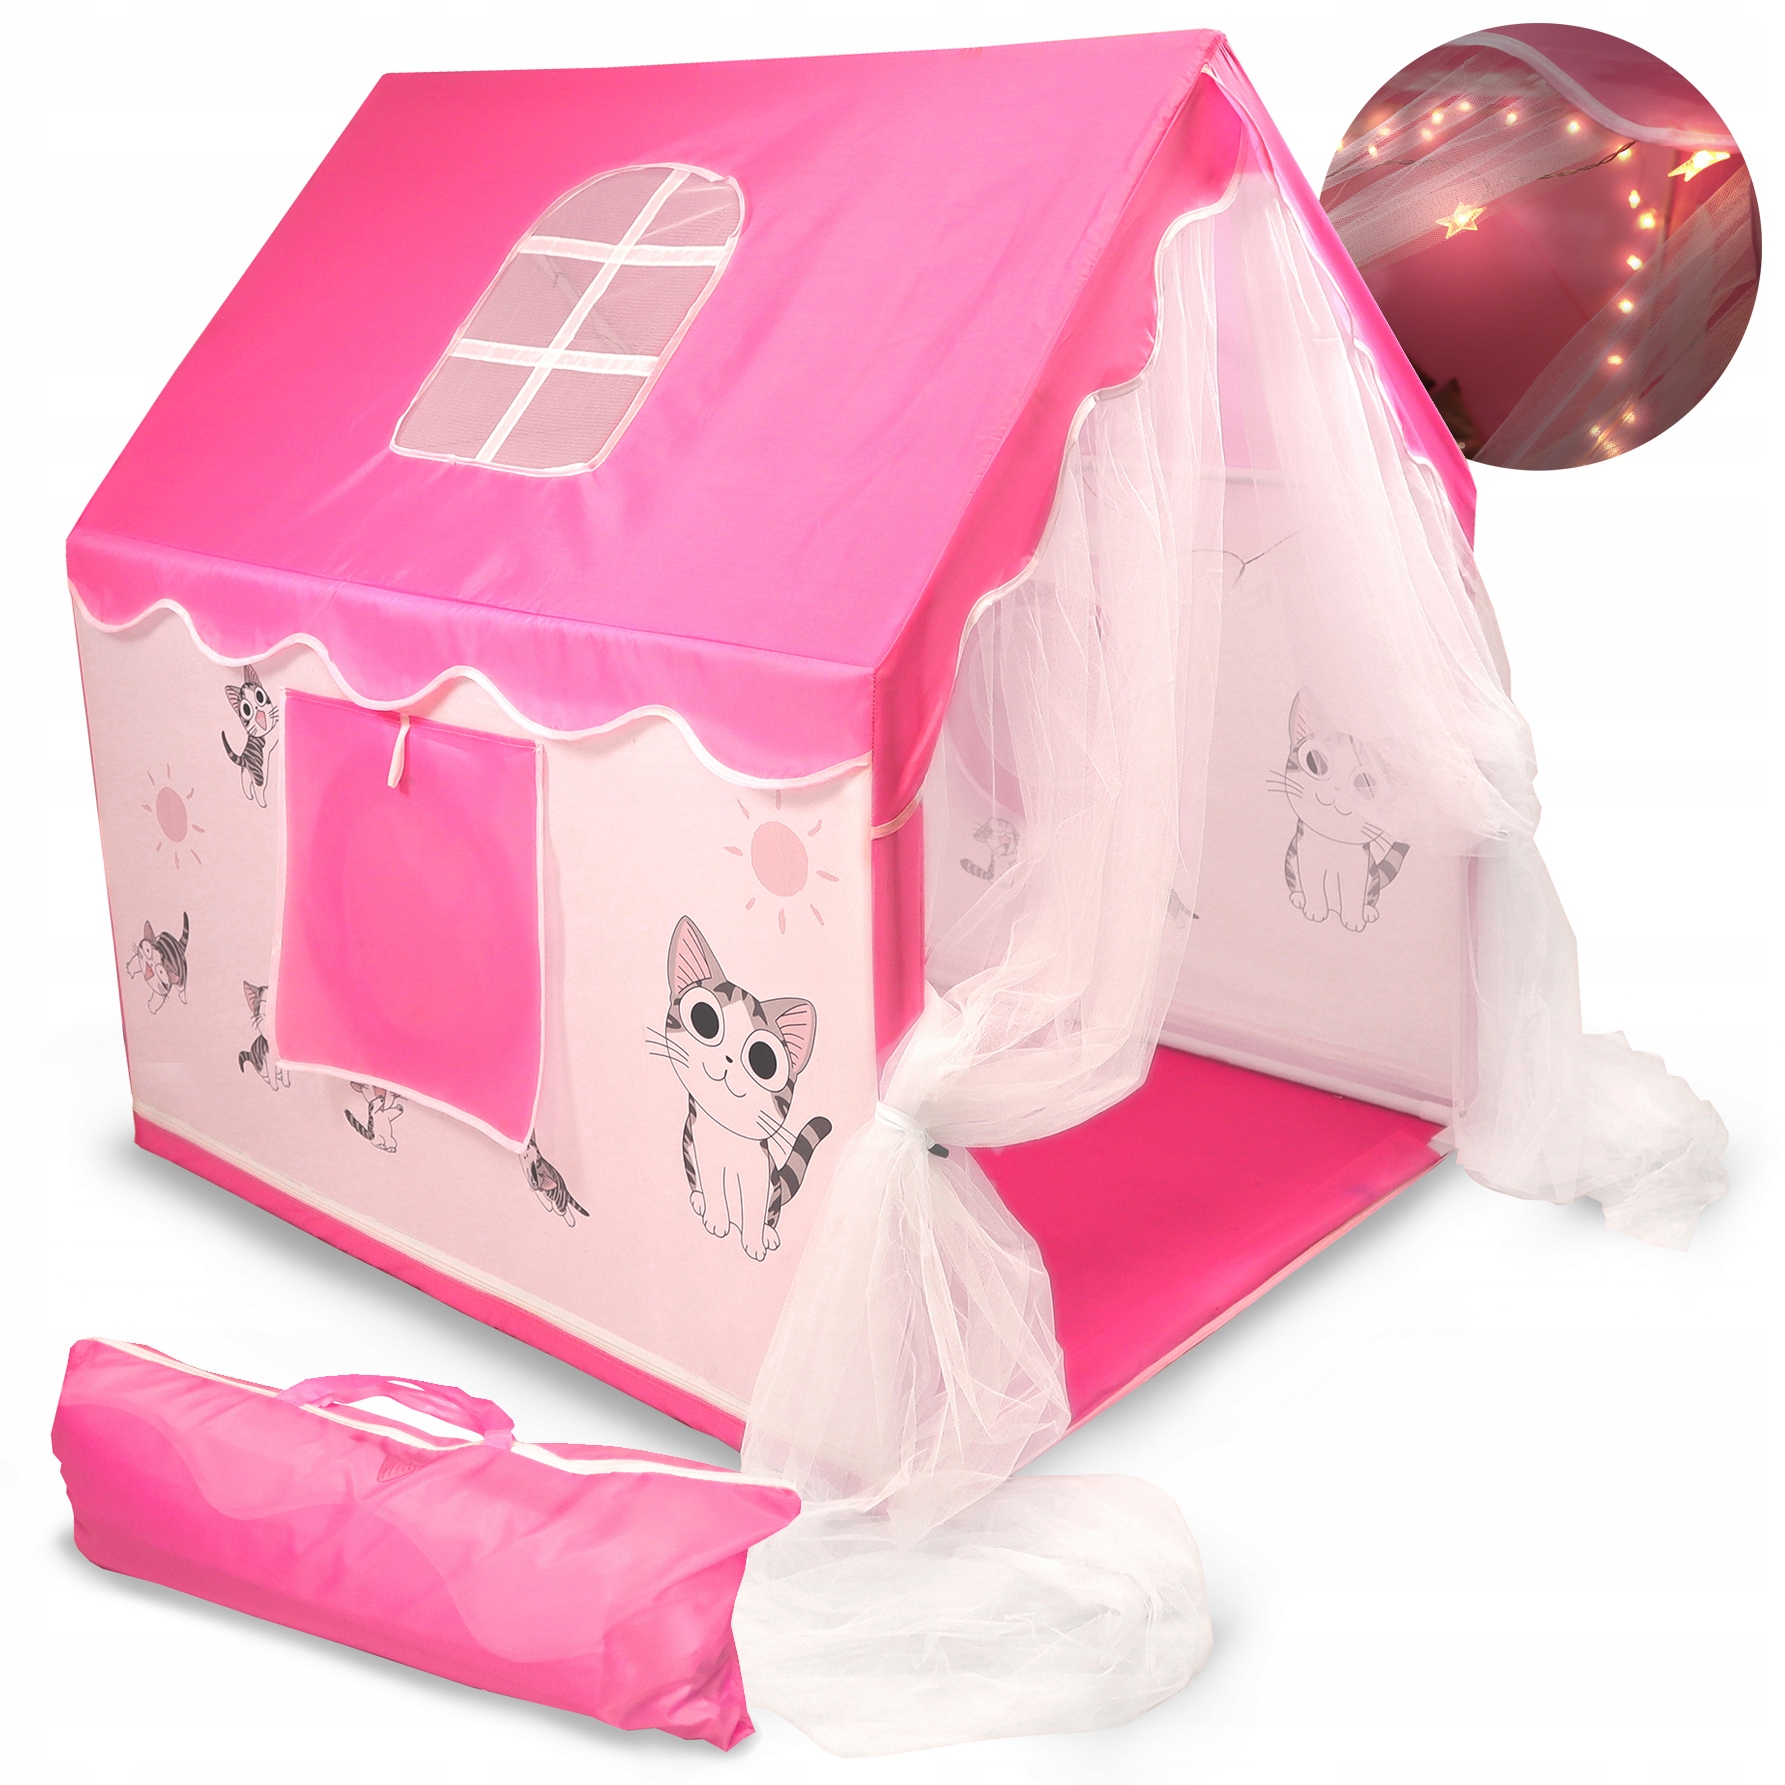 Namiot Dla Dzieci - Domek Do Zabawy W Kotki - Różowy